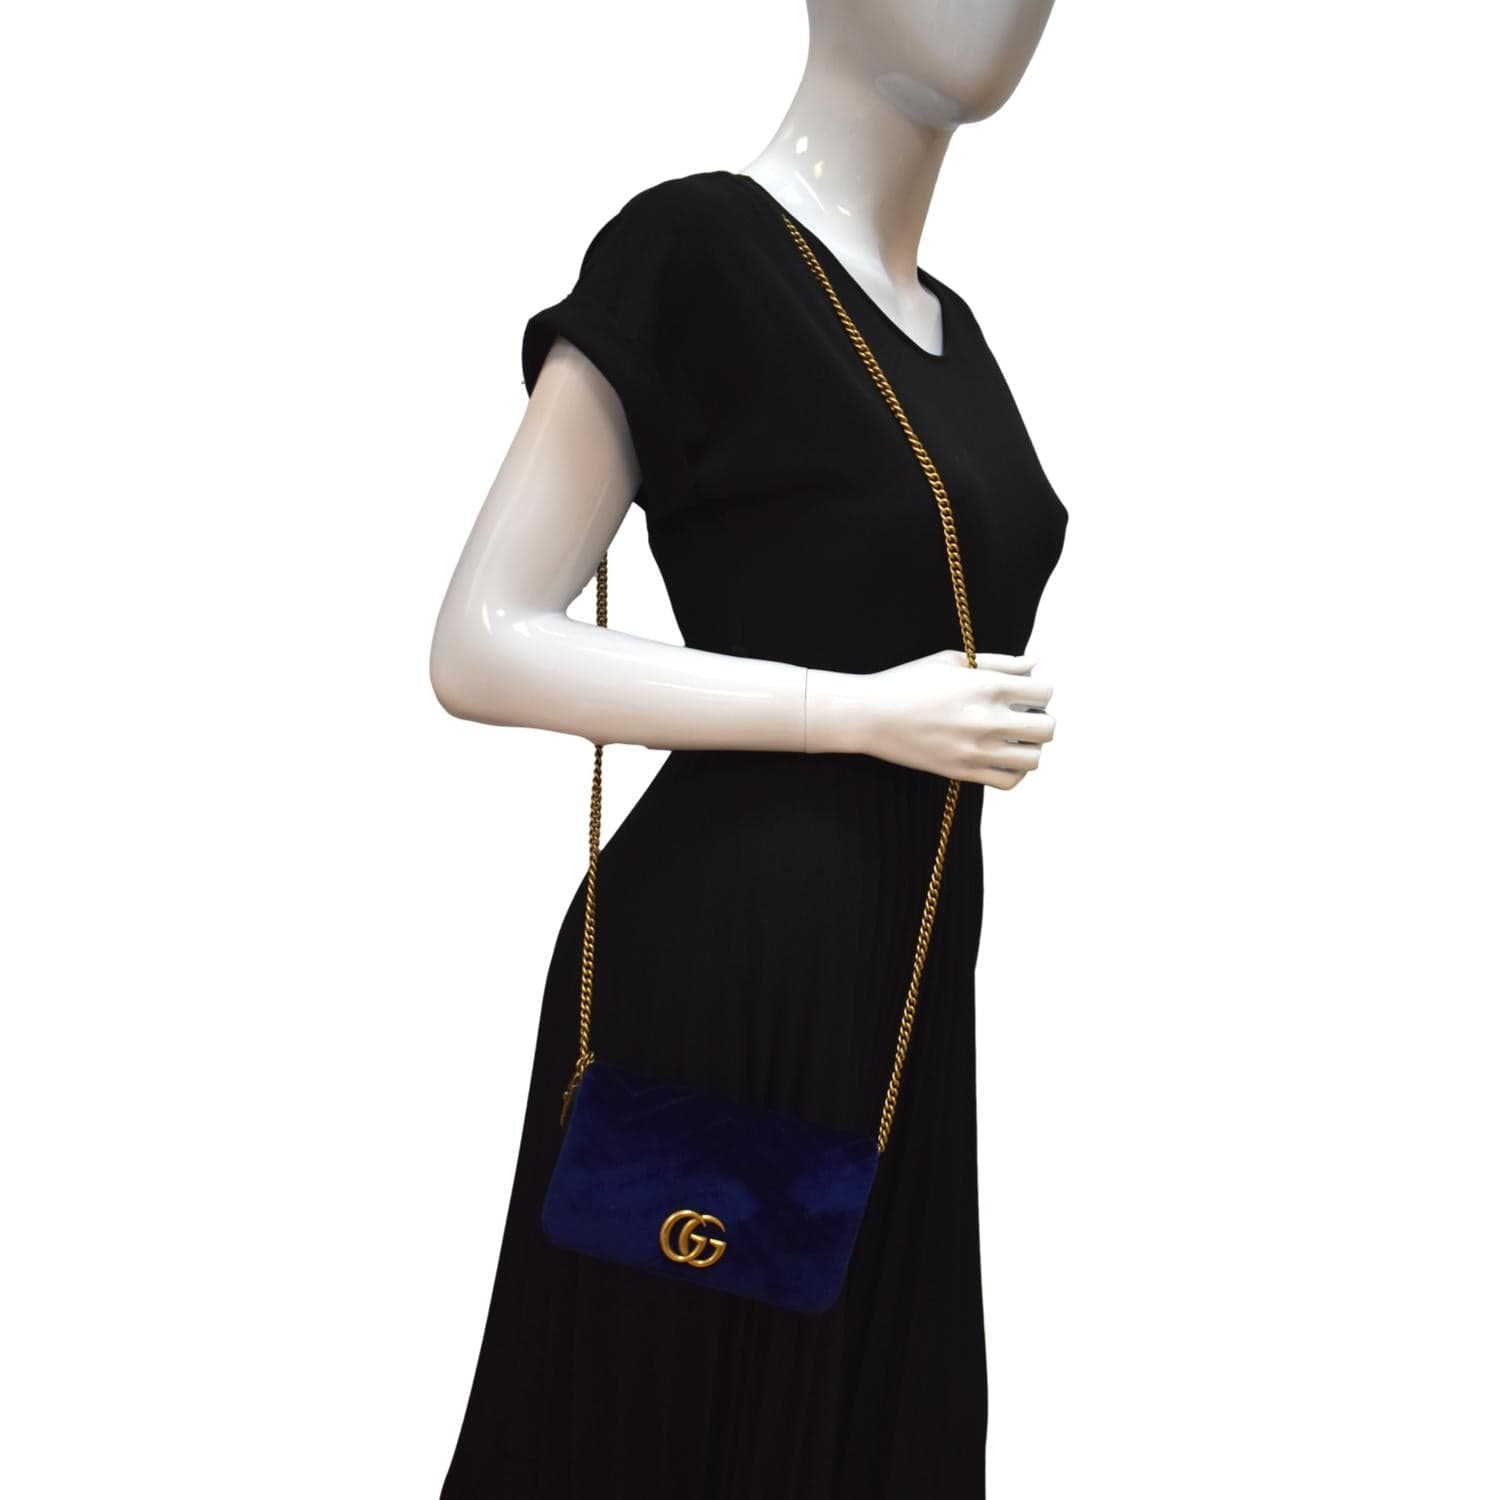 Mua Túi Đeo Chéo Nữ Gucci GG Marmont Small Shoulder Bag Màu Nâu Viền Đỏ -  Gucci - Mua tại Vua Hàng Hiệu h093075